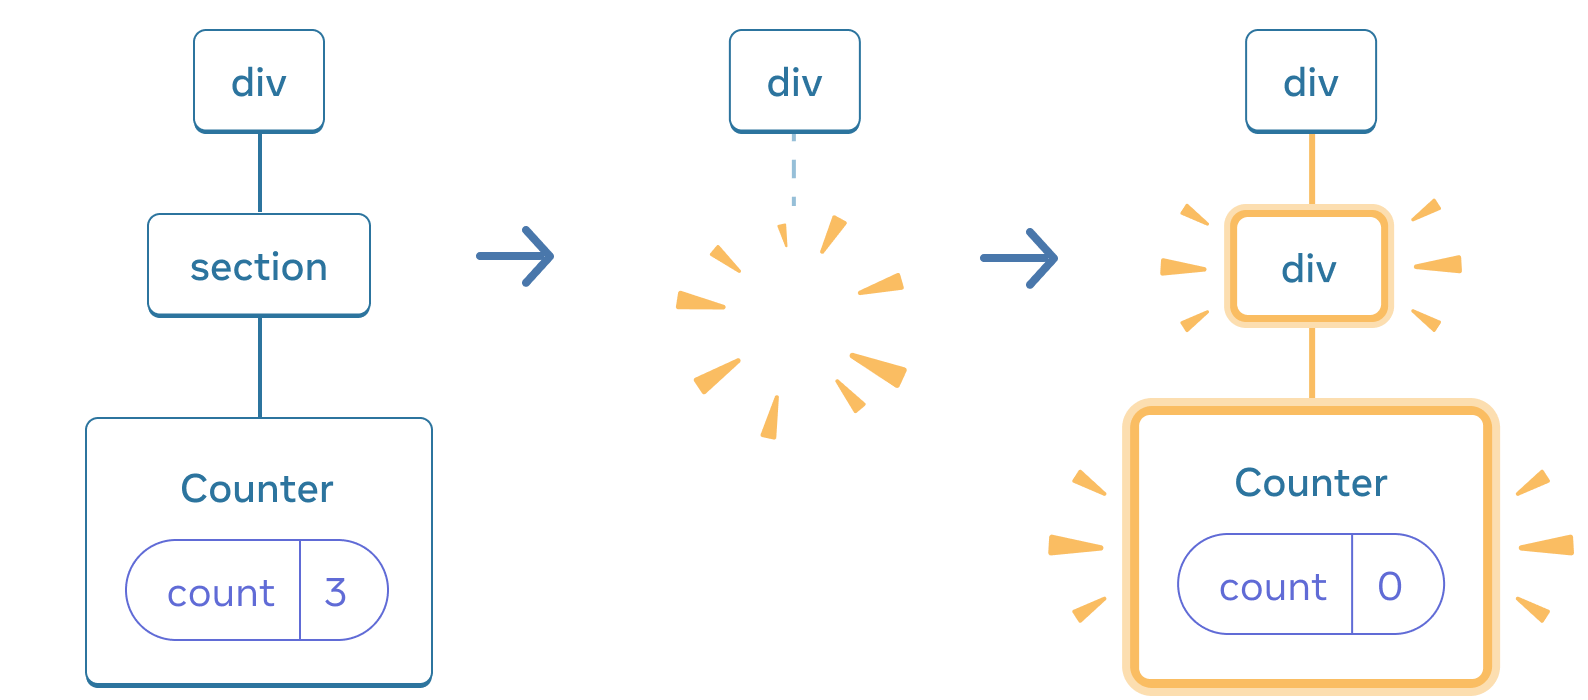 矢印で遷移する 3 セクションから構成される図。最初のセクションには React コンポーネントとして 'div' とその子である 'section' がある。さらにその子に 'Counter' があり、'count' の state ボックスは 3 となっている。中央のセクションにも親の 'div' があるが、子が消失している。最後のセクションにも 'div' があり、今度は別の 'div' が新しい子となってハイライトされている。さらにその子に 'Counter' があって黄色でハイライトされており、その 'count' の state ボックスは 0 となっている。